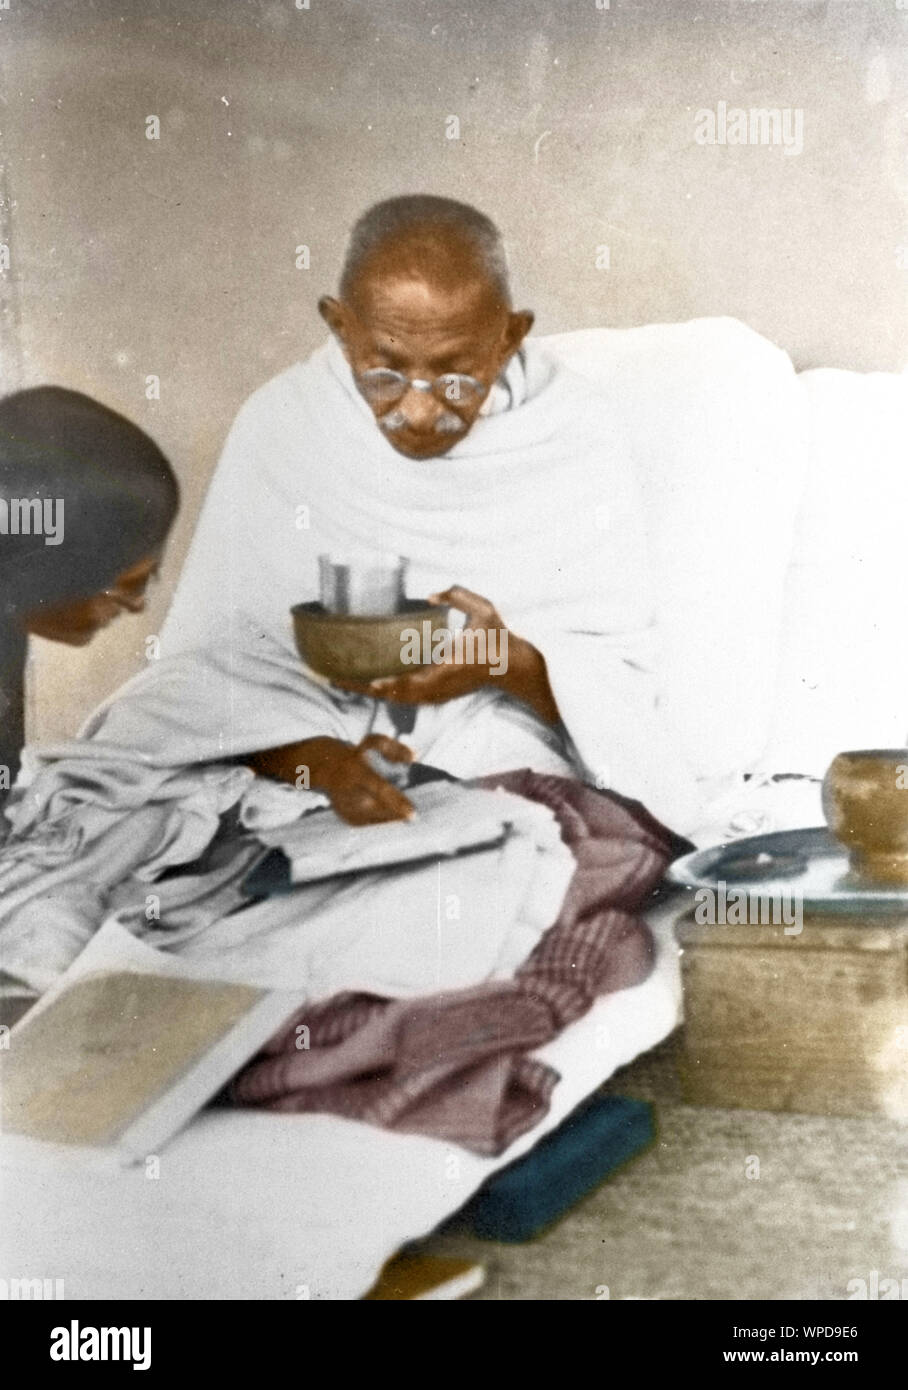 Mahatma Gandhi ayant terminé les repas, la lecture et la conversation, Wardha, Inde, Asie, 1936 Banque D'Images